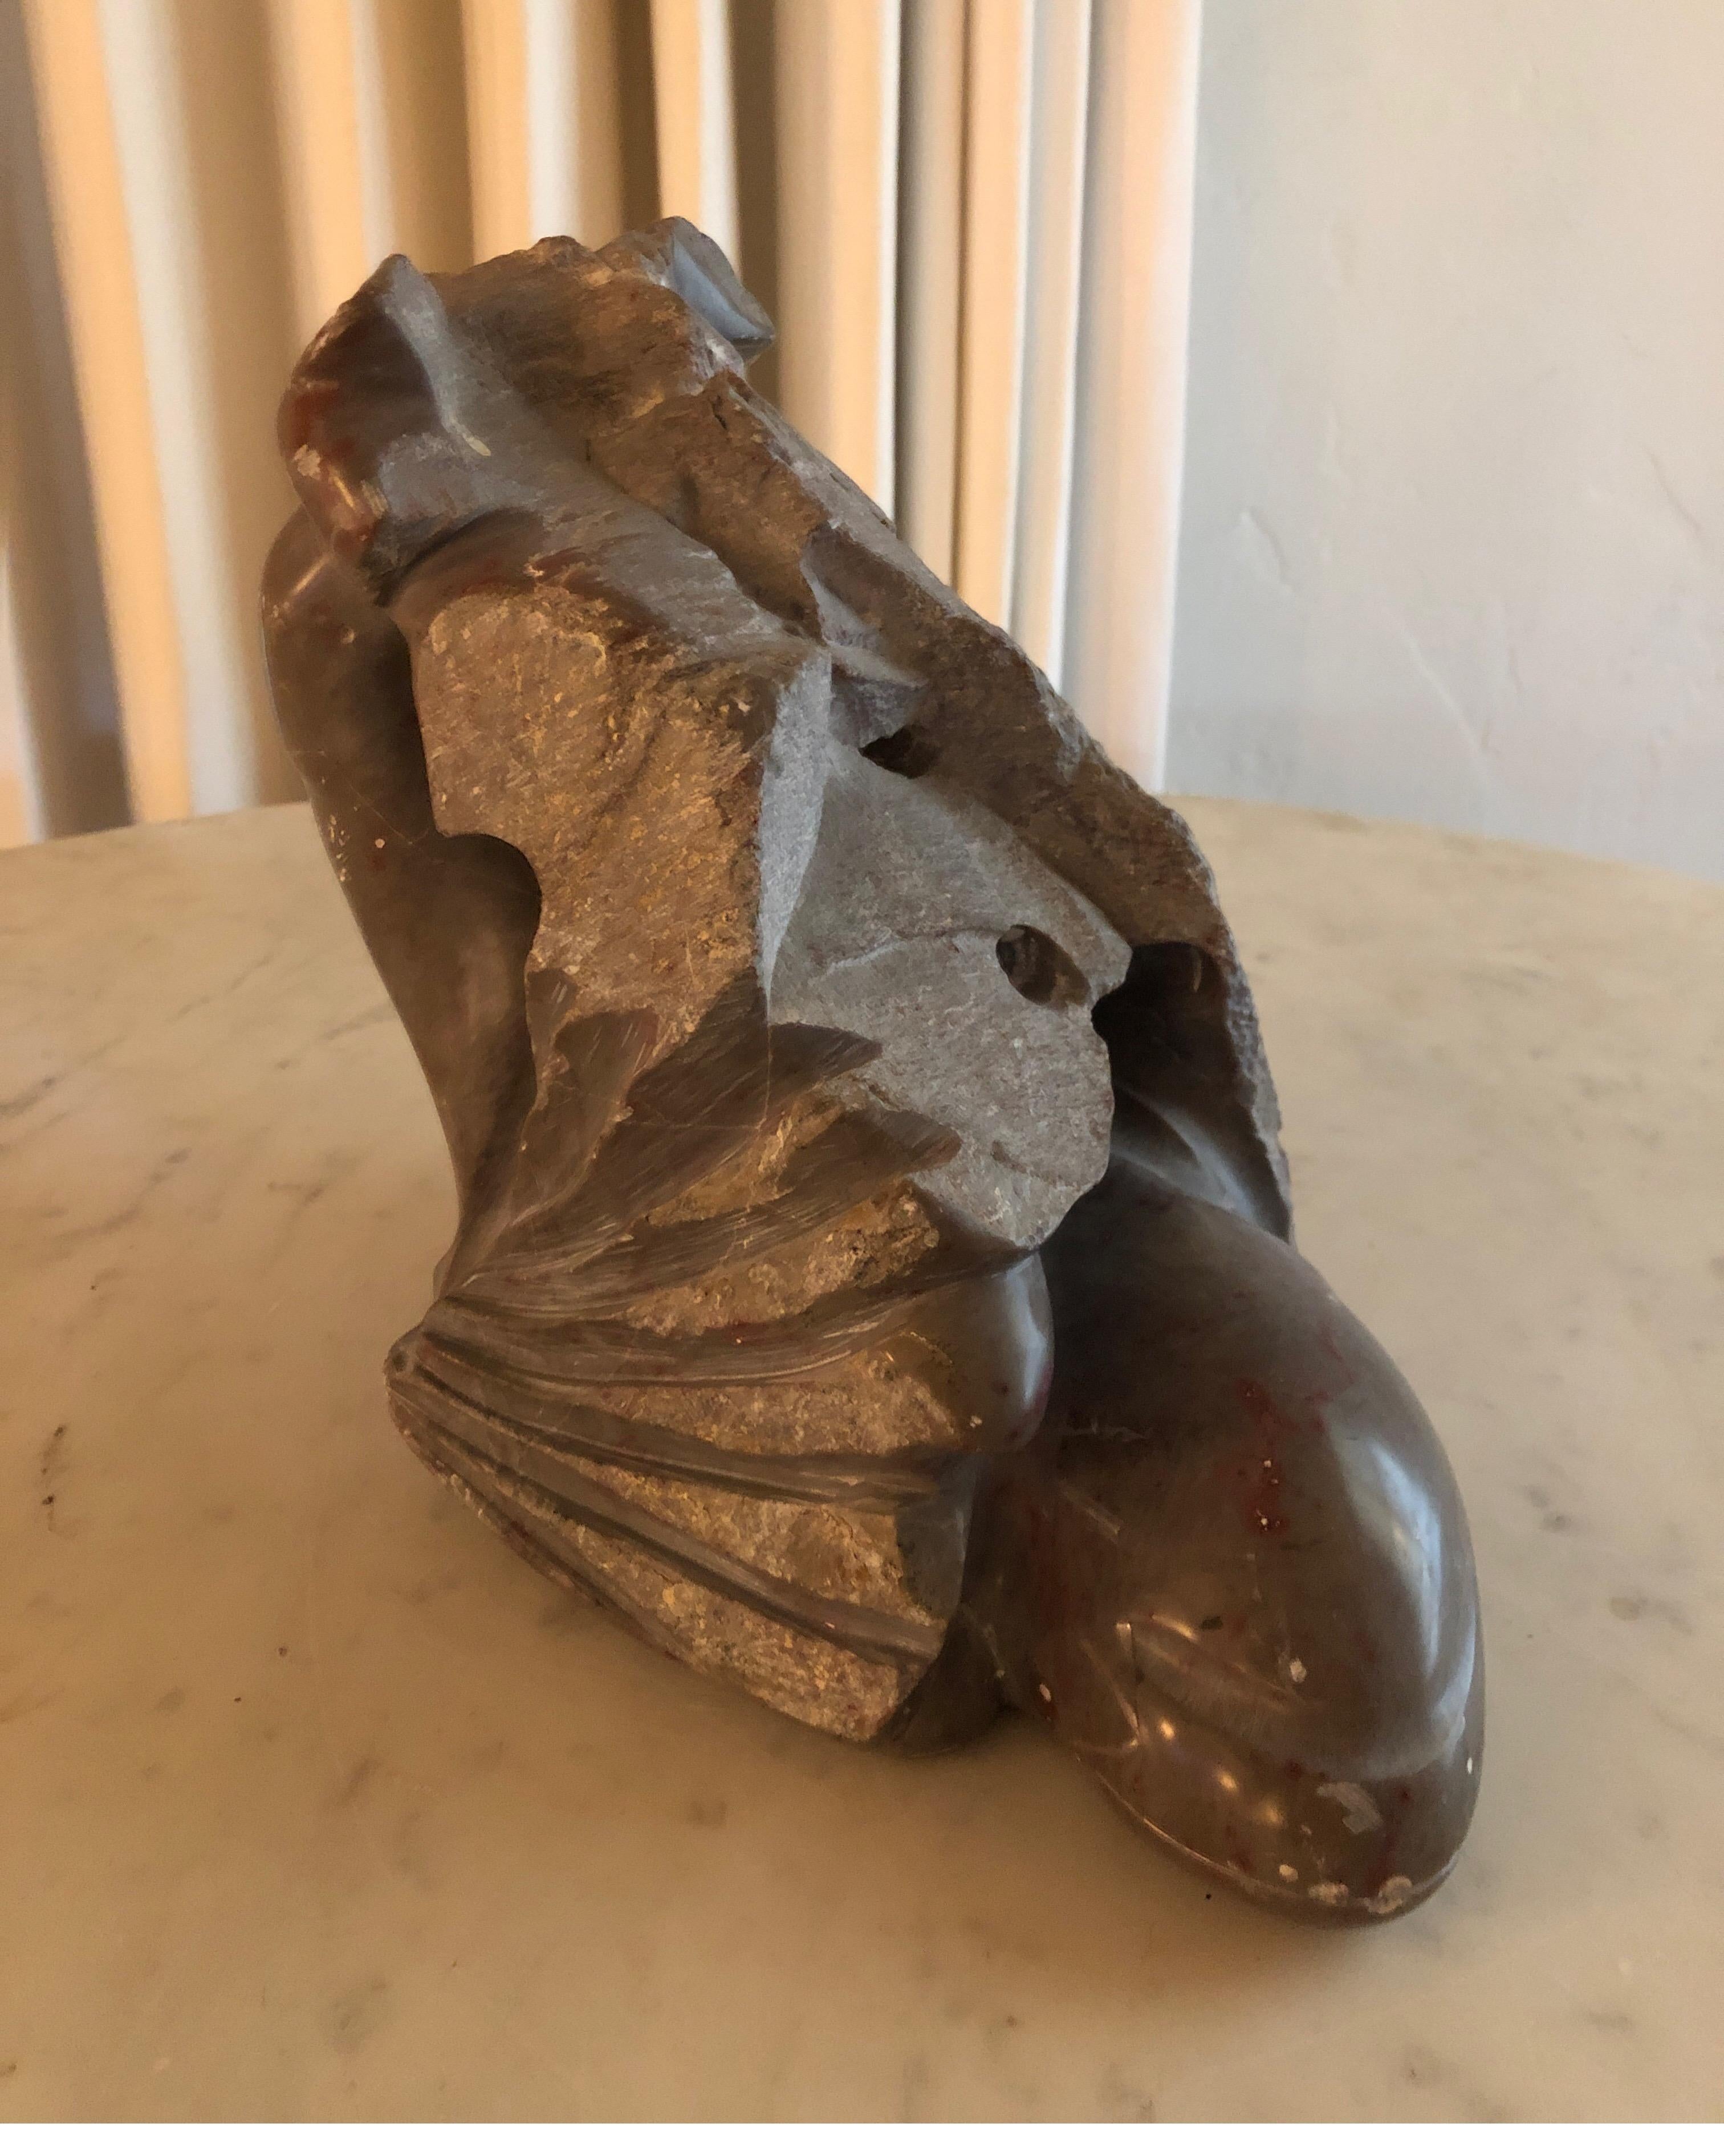 Sculpture moderniste signée avec des cœurs infâmes par l'artiste américain Yehuda Dodd Roth.
Pierre sculptée grise avec des nuances de brun rougeâtre.